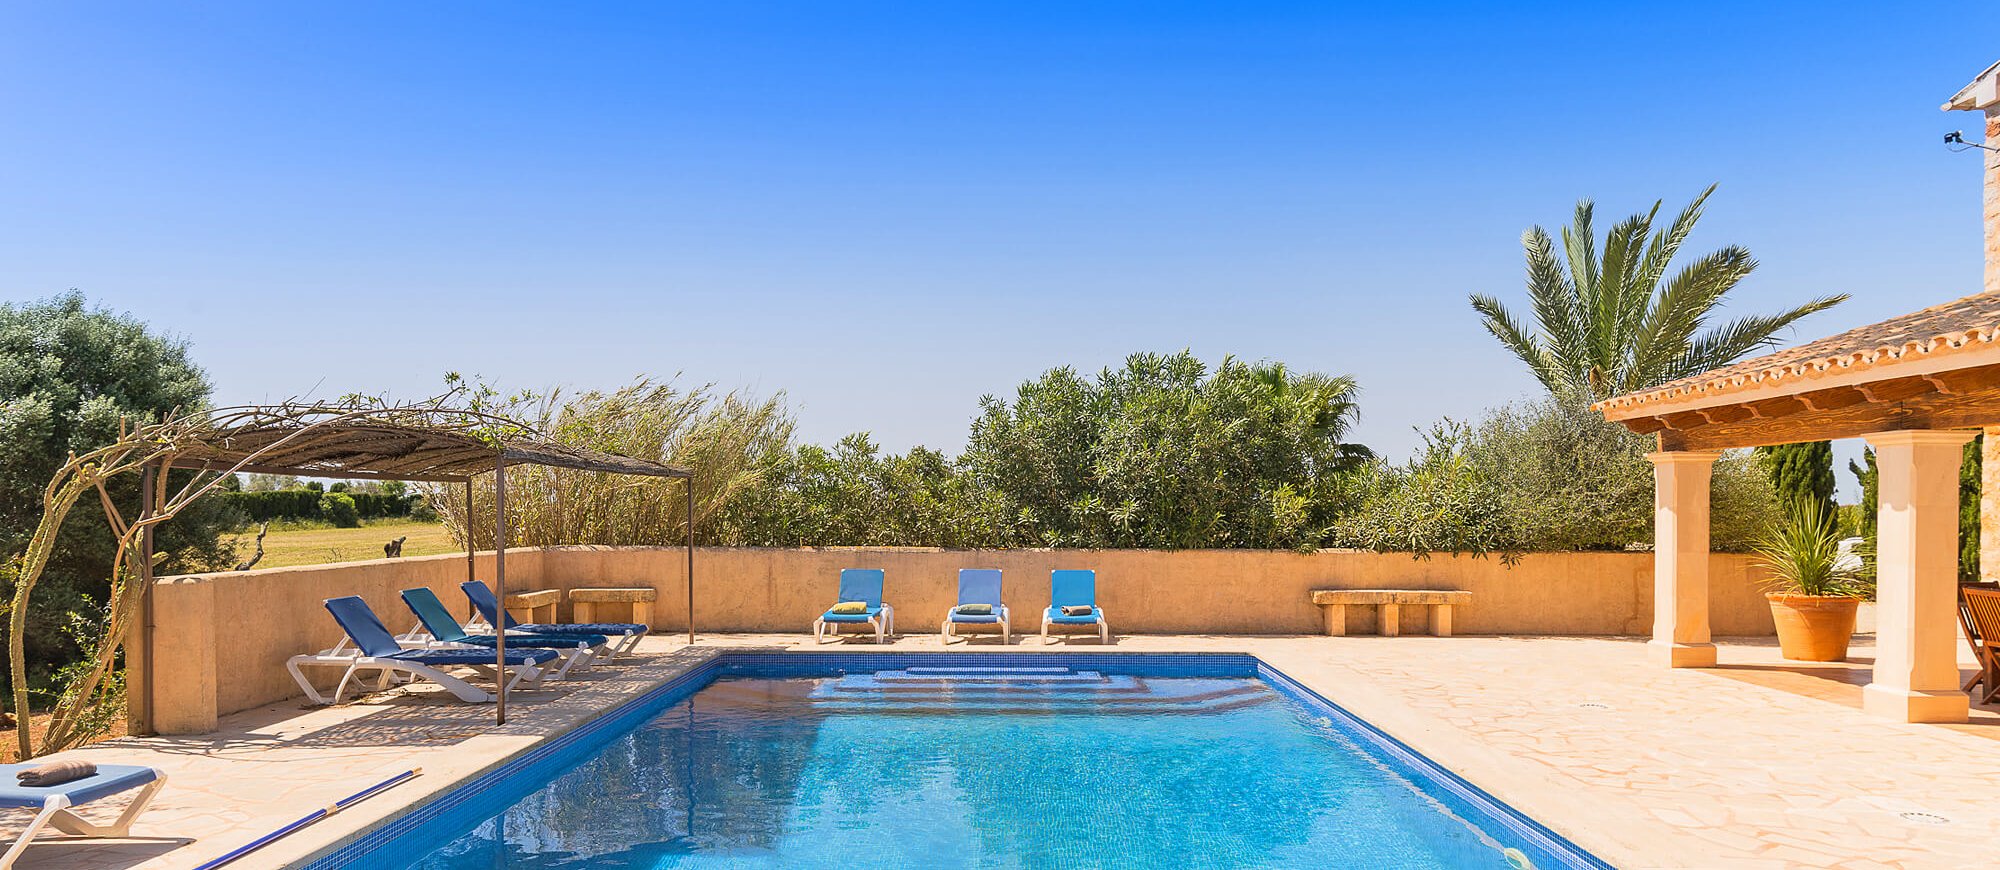 Ferienhaus Mallorca mit Pool für 8 Personen mieten.